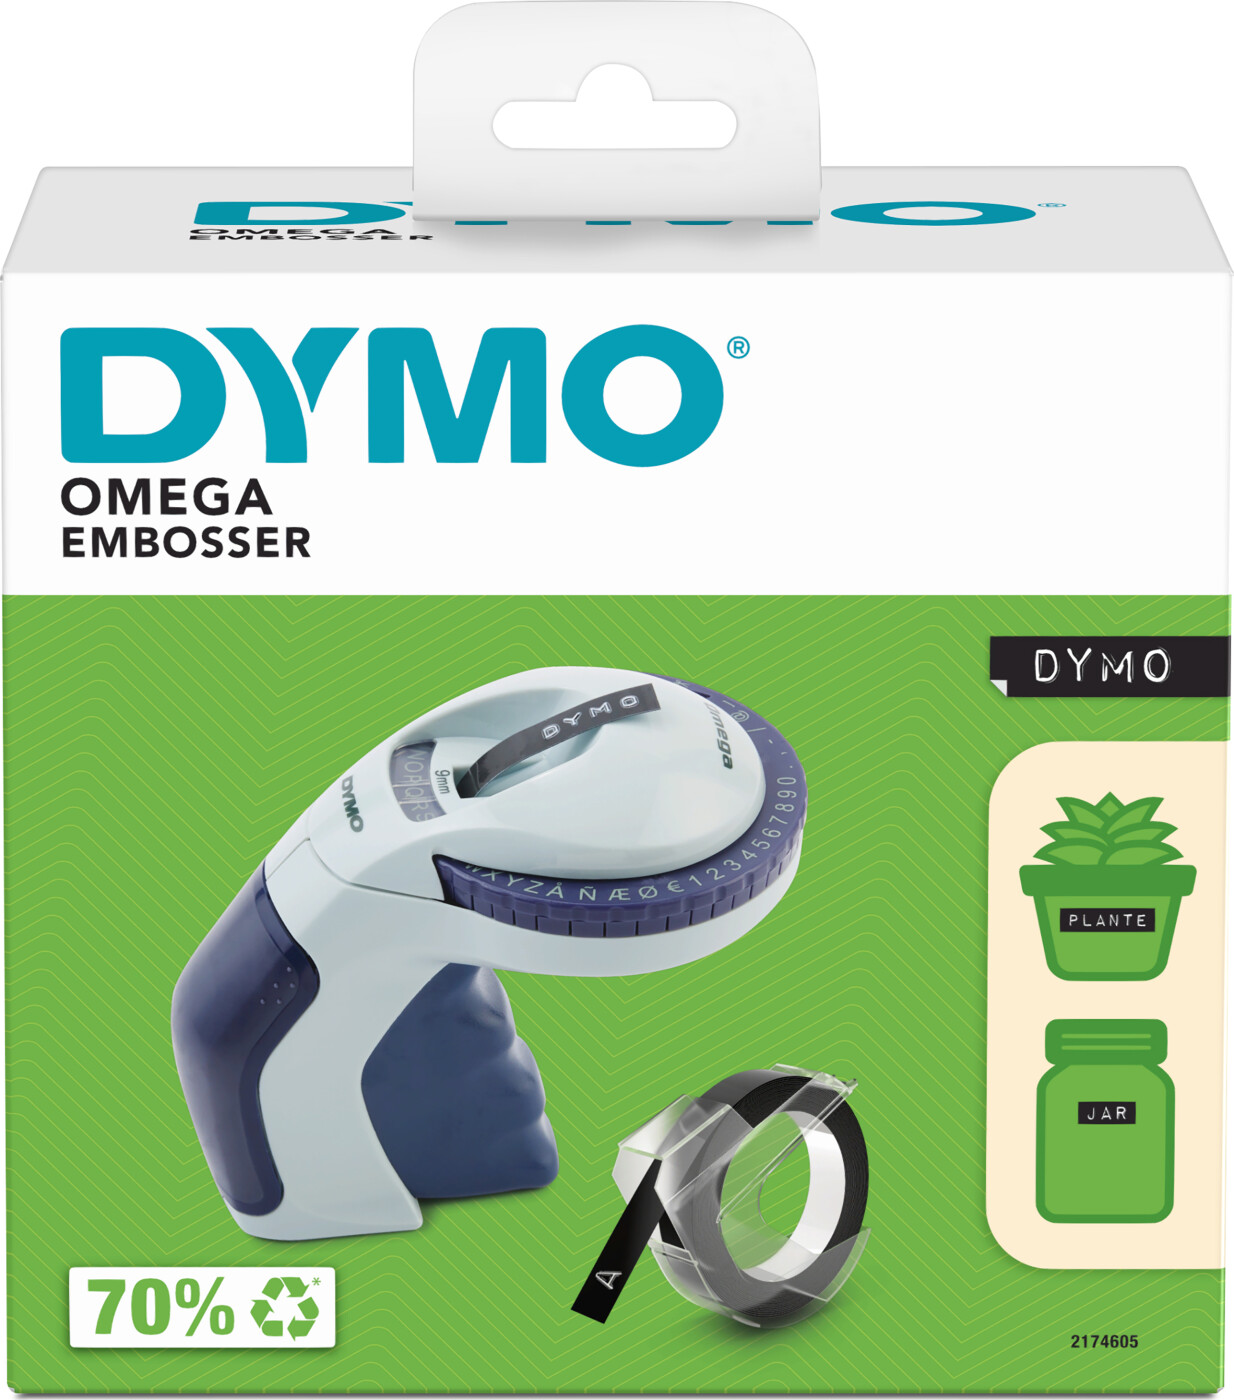 Dymo - Omega Prægemaskine Dk/no